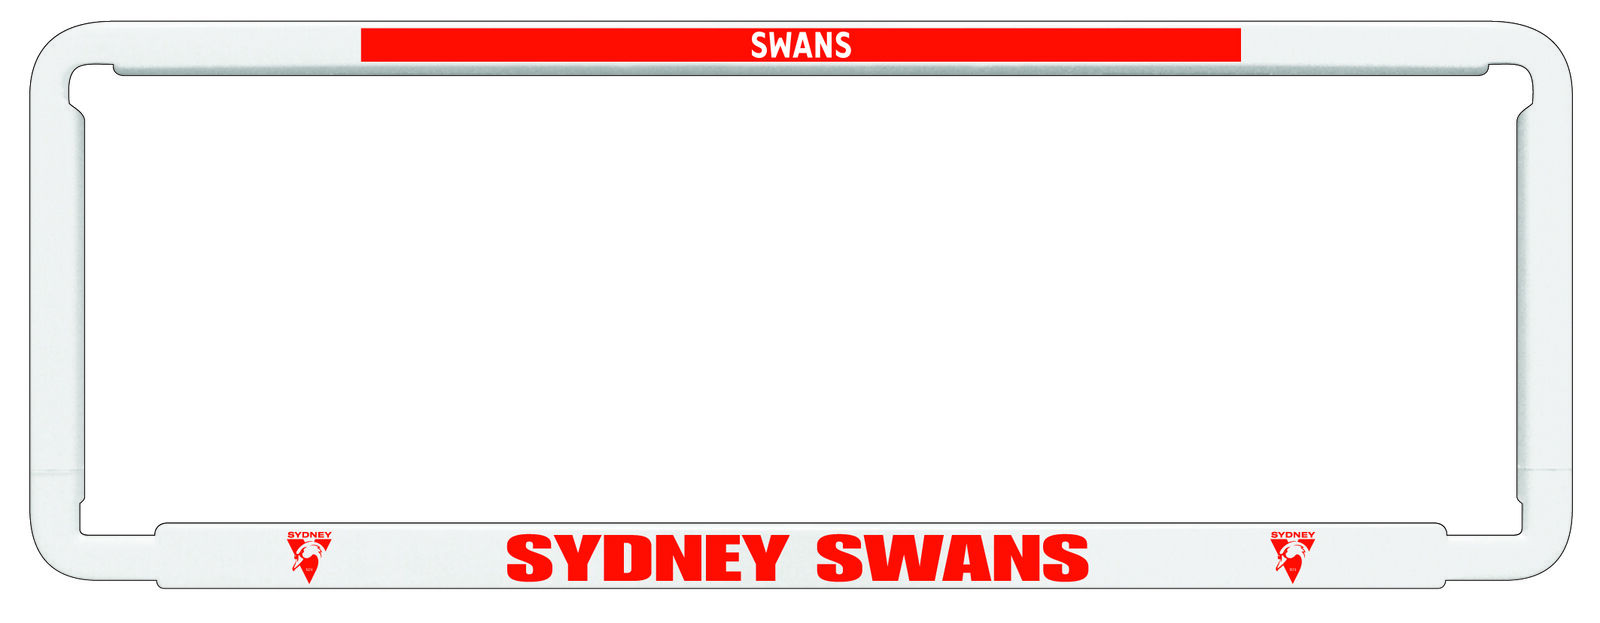 AFL SYDNEY SWANS number plate frame